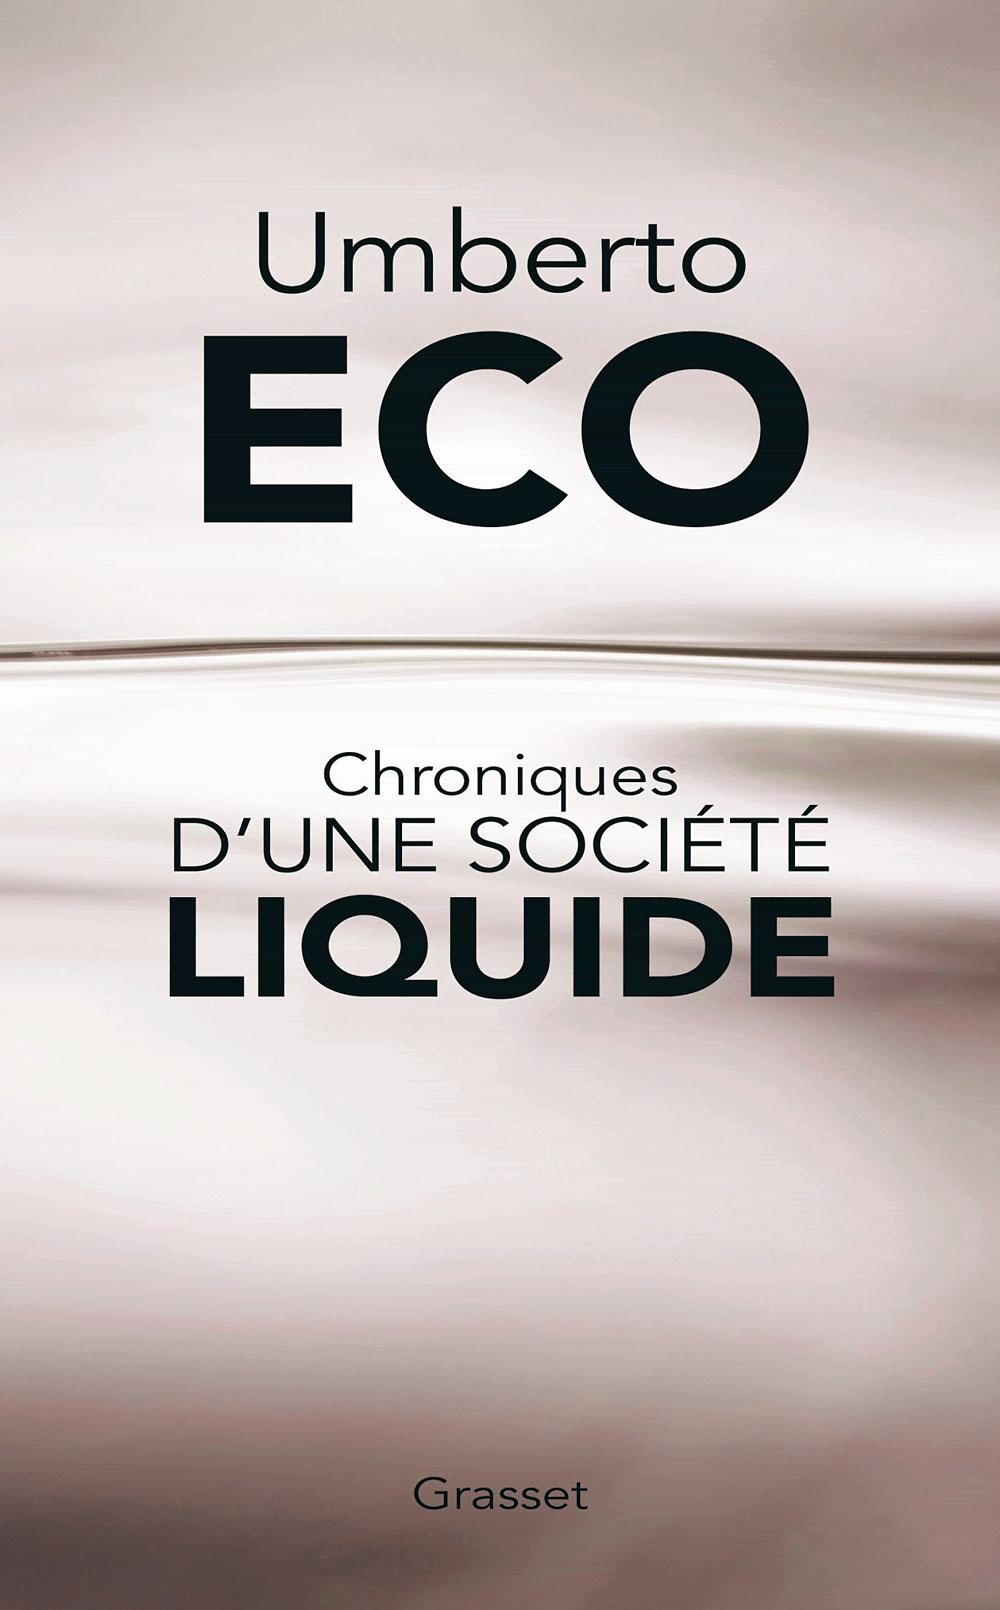 Chroniques d'une société liquide, par Umberto Eco, traduit de l'italien par Myriem Bouzaher, Grasset, 508 p.